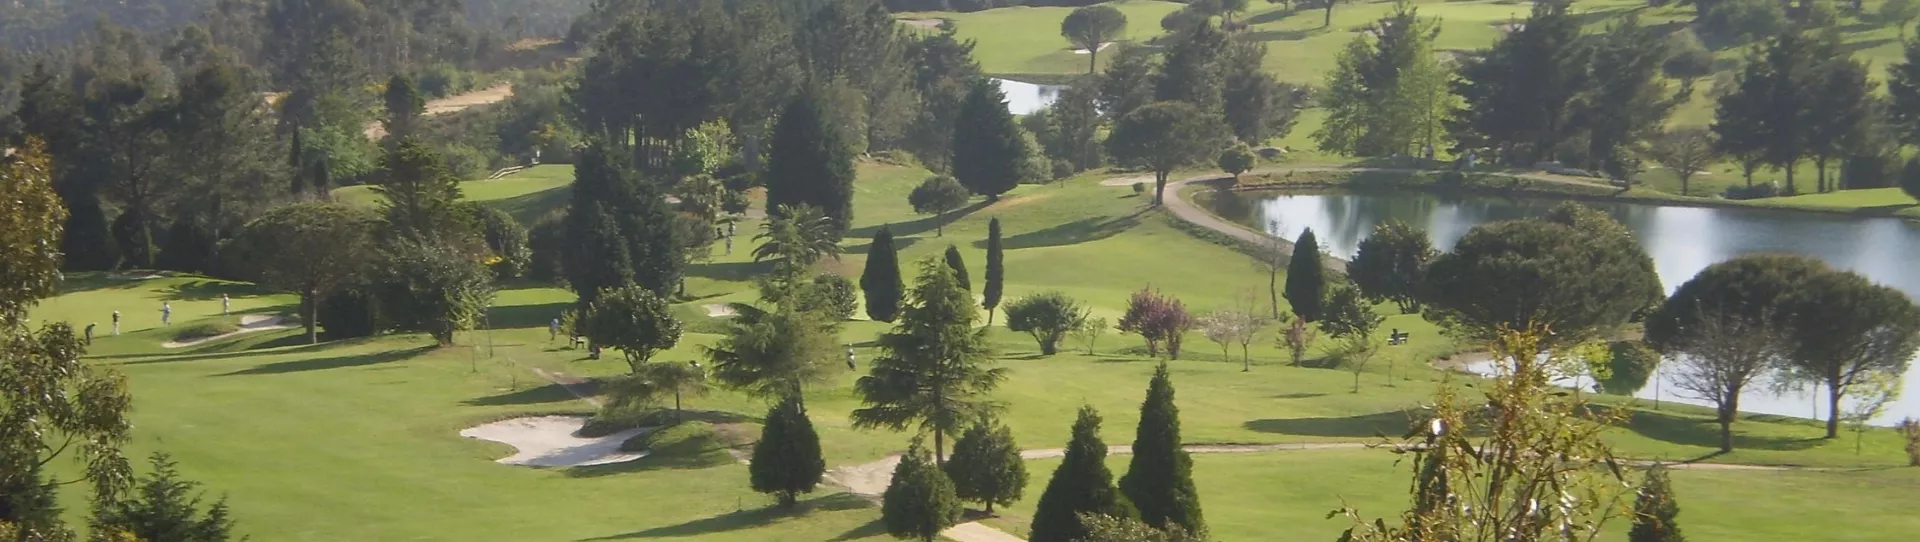 Spain golf courses - Ría de Vigo Golf Course - Photo 2